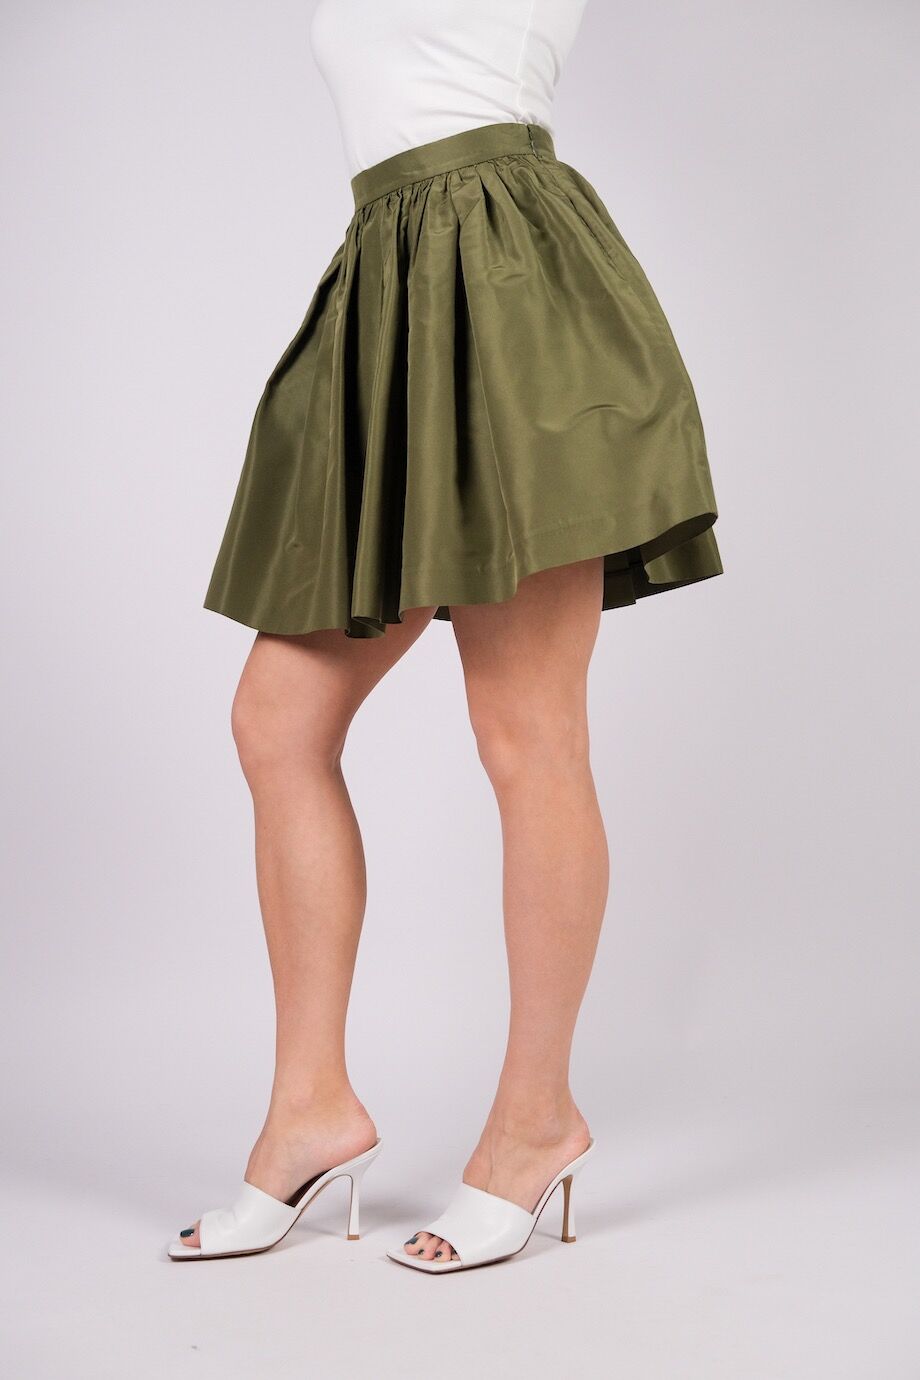 image 3 Шелковая юбка пышного кроя выше колена